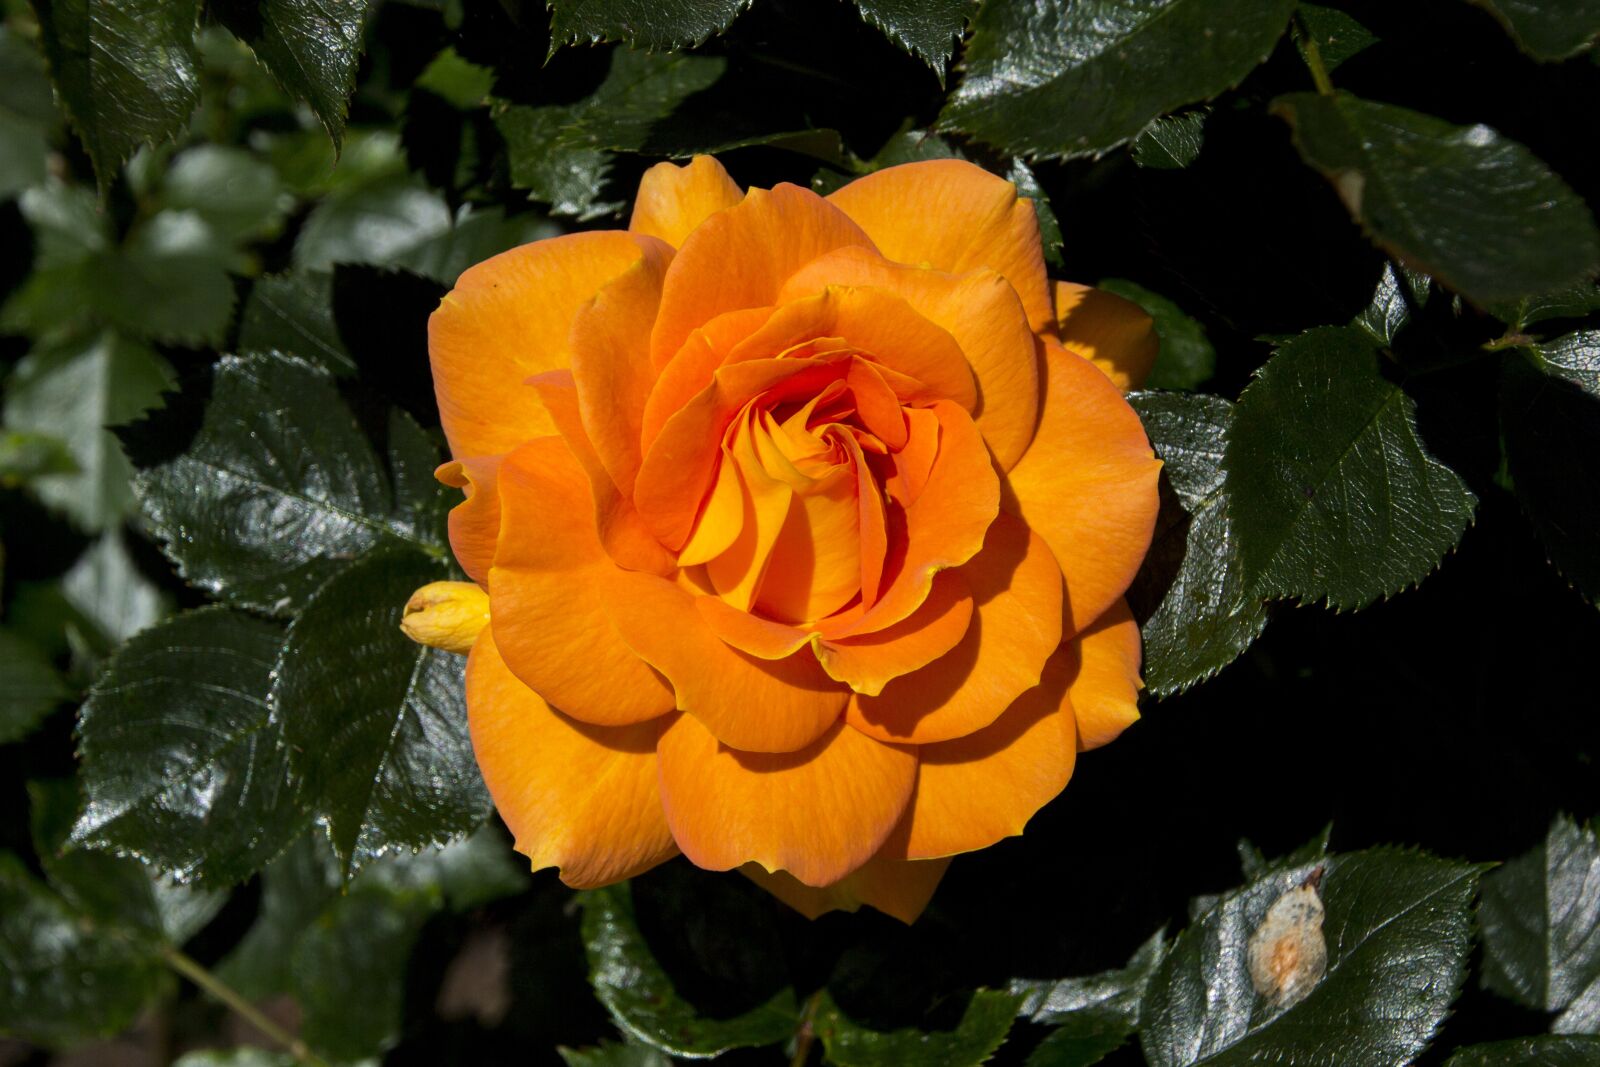 Canon EOS 60D sample photo. Rose, garden, nature photography